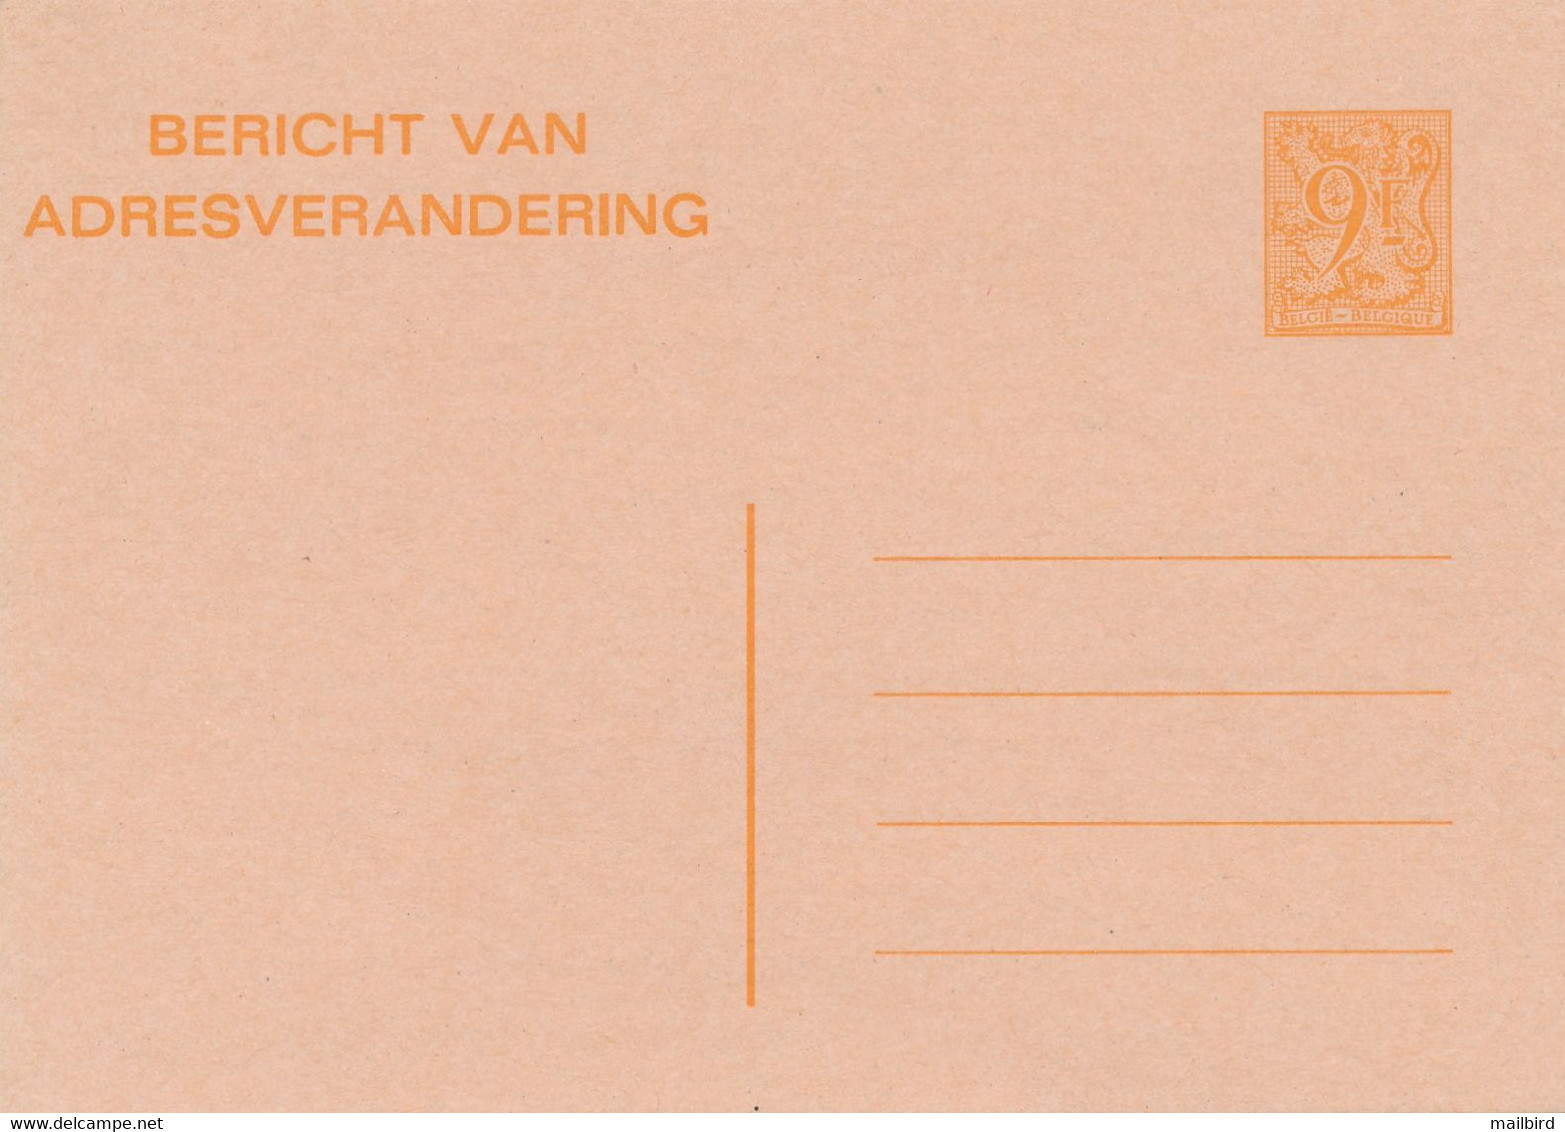 CA/AV 26 F- 9,00fr Orange/oranje -Avis De Changement D'Adresse/Bericht Van Adresverandering-1985- NEUF / NIEUW - Adressenänderungen